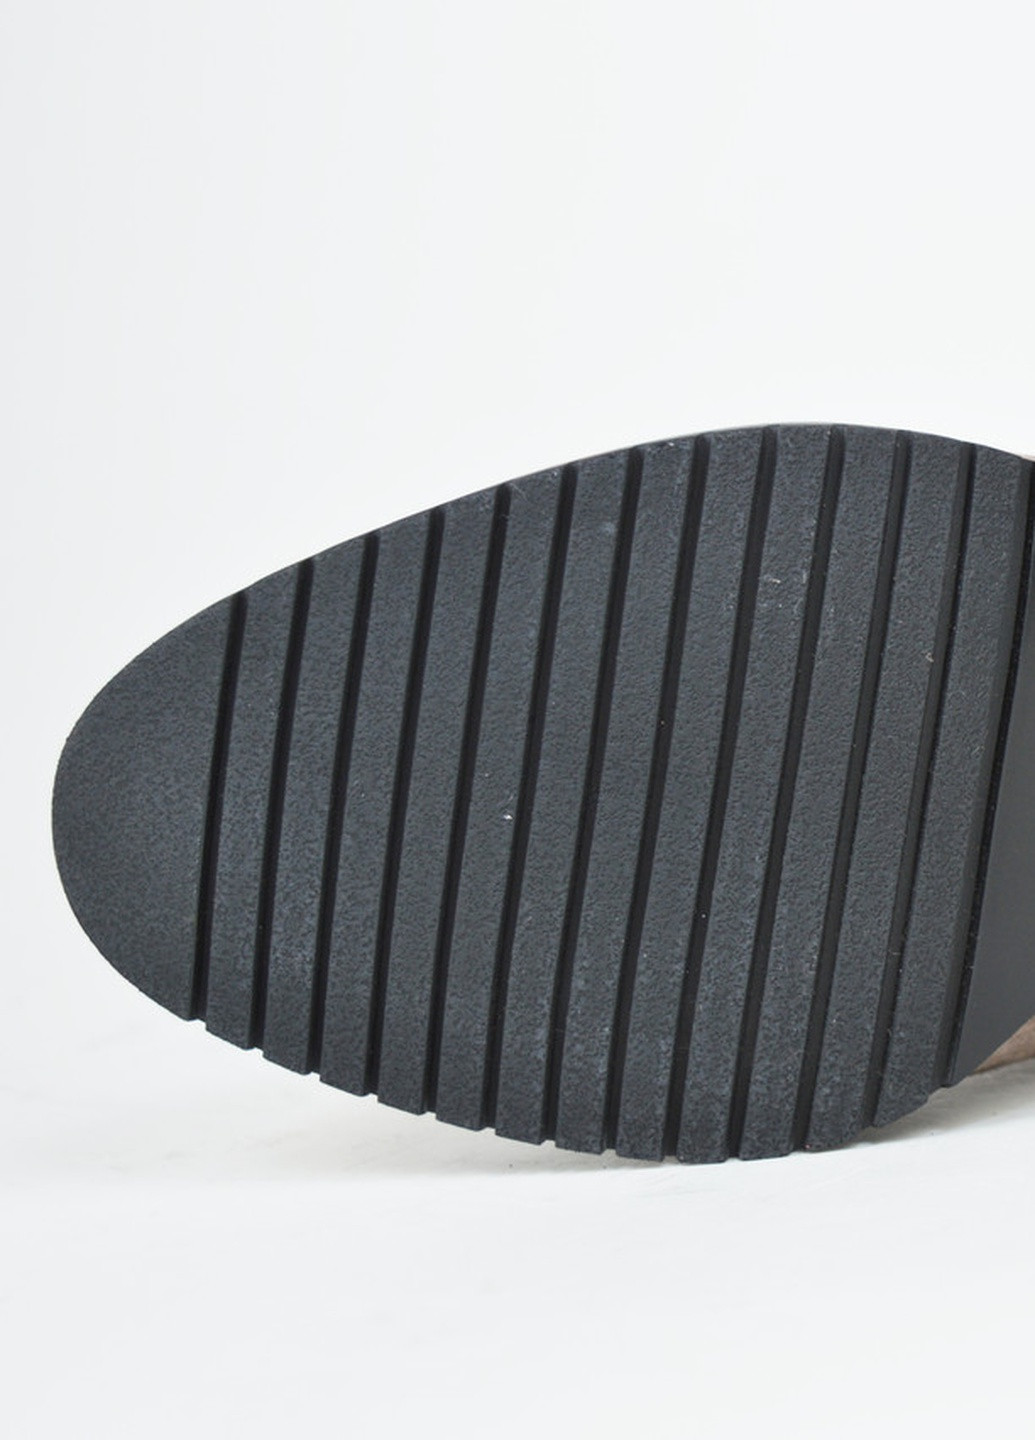 Зимние ботинки на каблуке черные замша Berkonty с мехом из натуральной замши